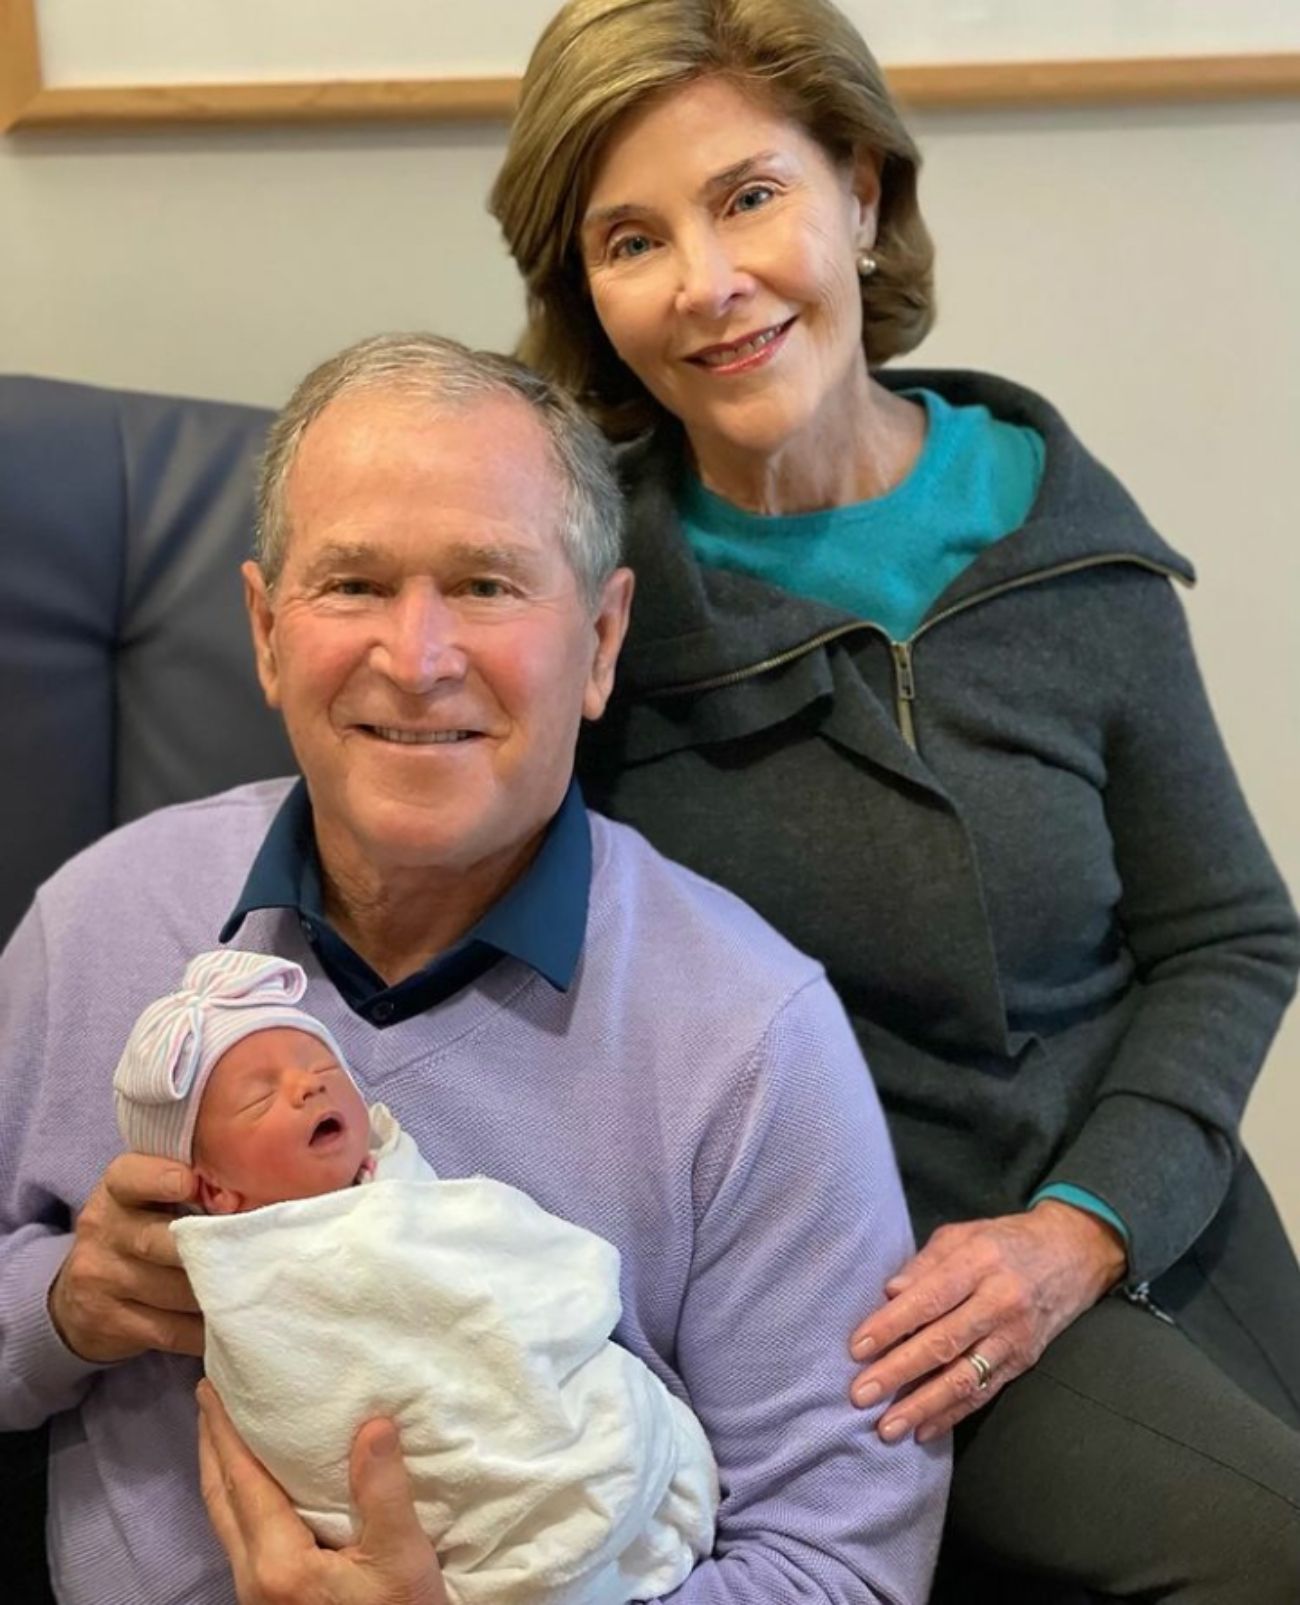 George W. Bush presenta a su nieta recién nacida: "Estamos orgullosos y agradecidos"